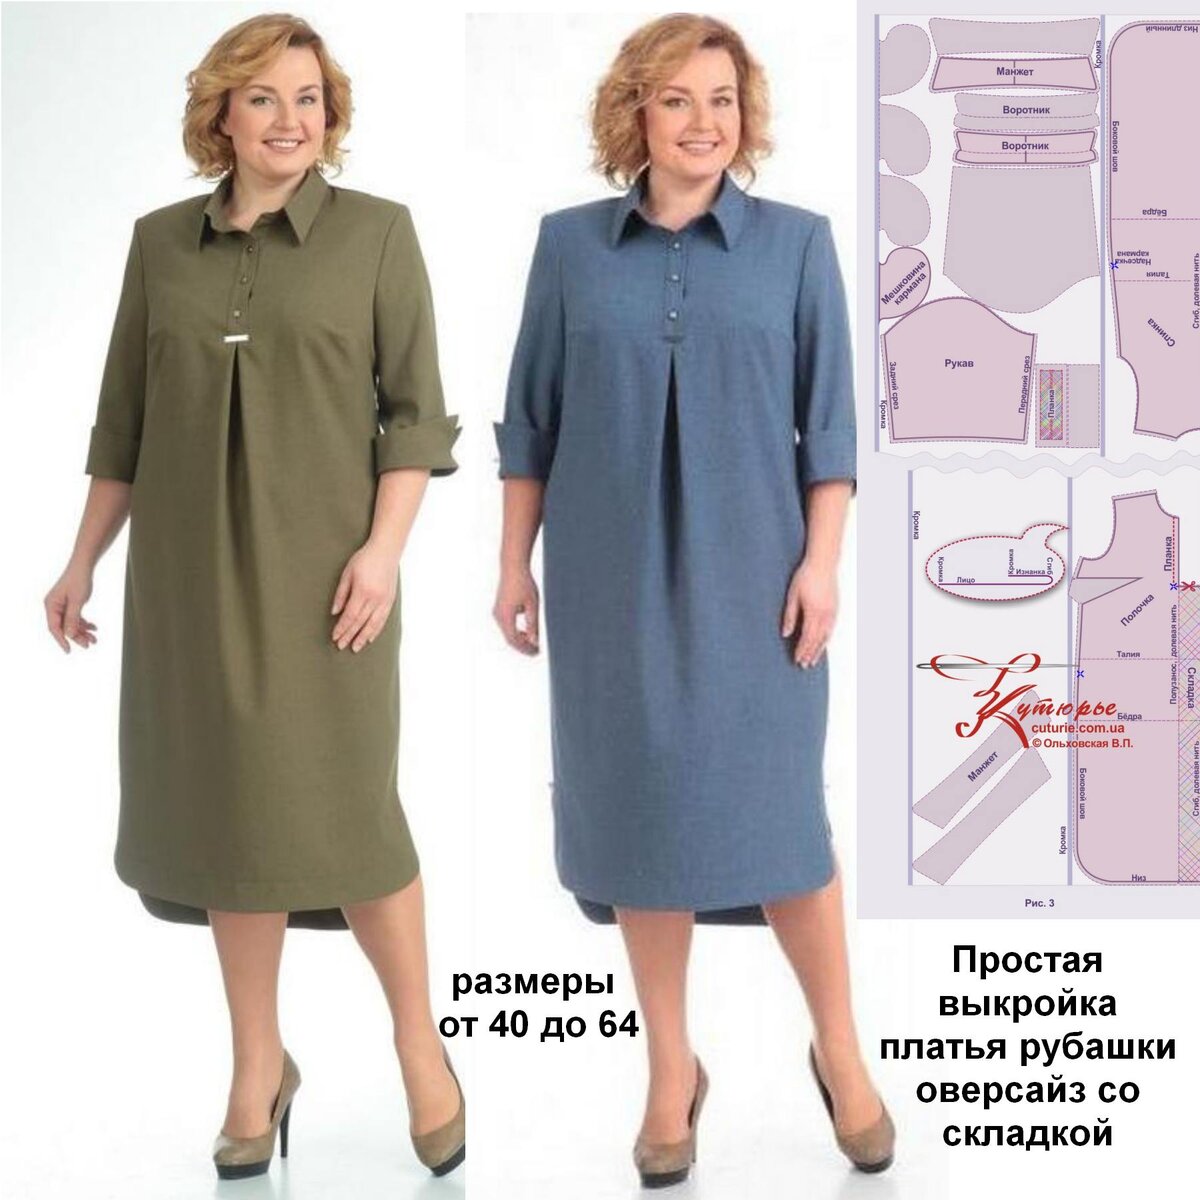 Модное платье-рубашка своими руками (Шитье и крой) – Журнал Вдохновение Рукодельницы